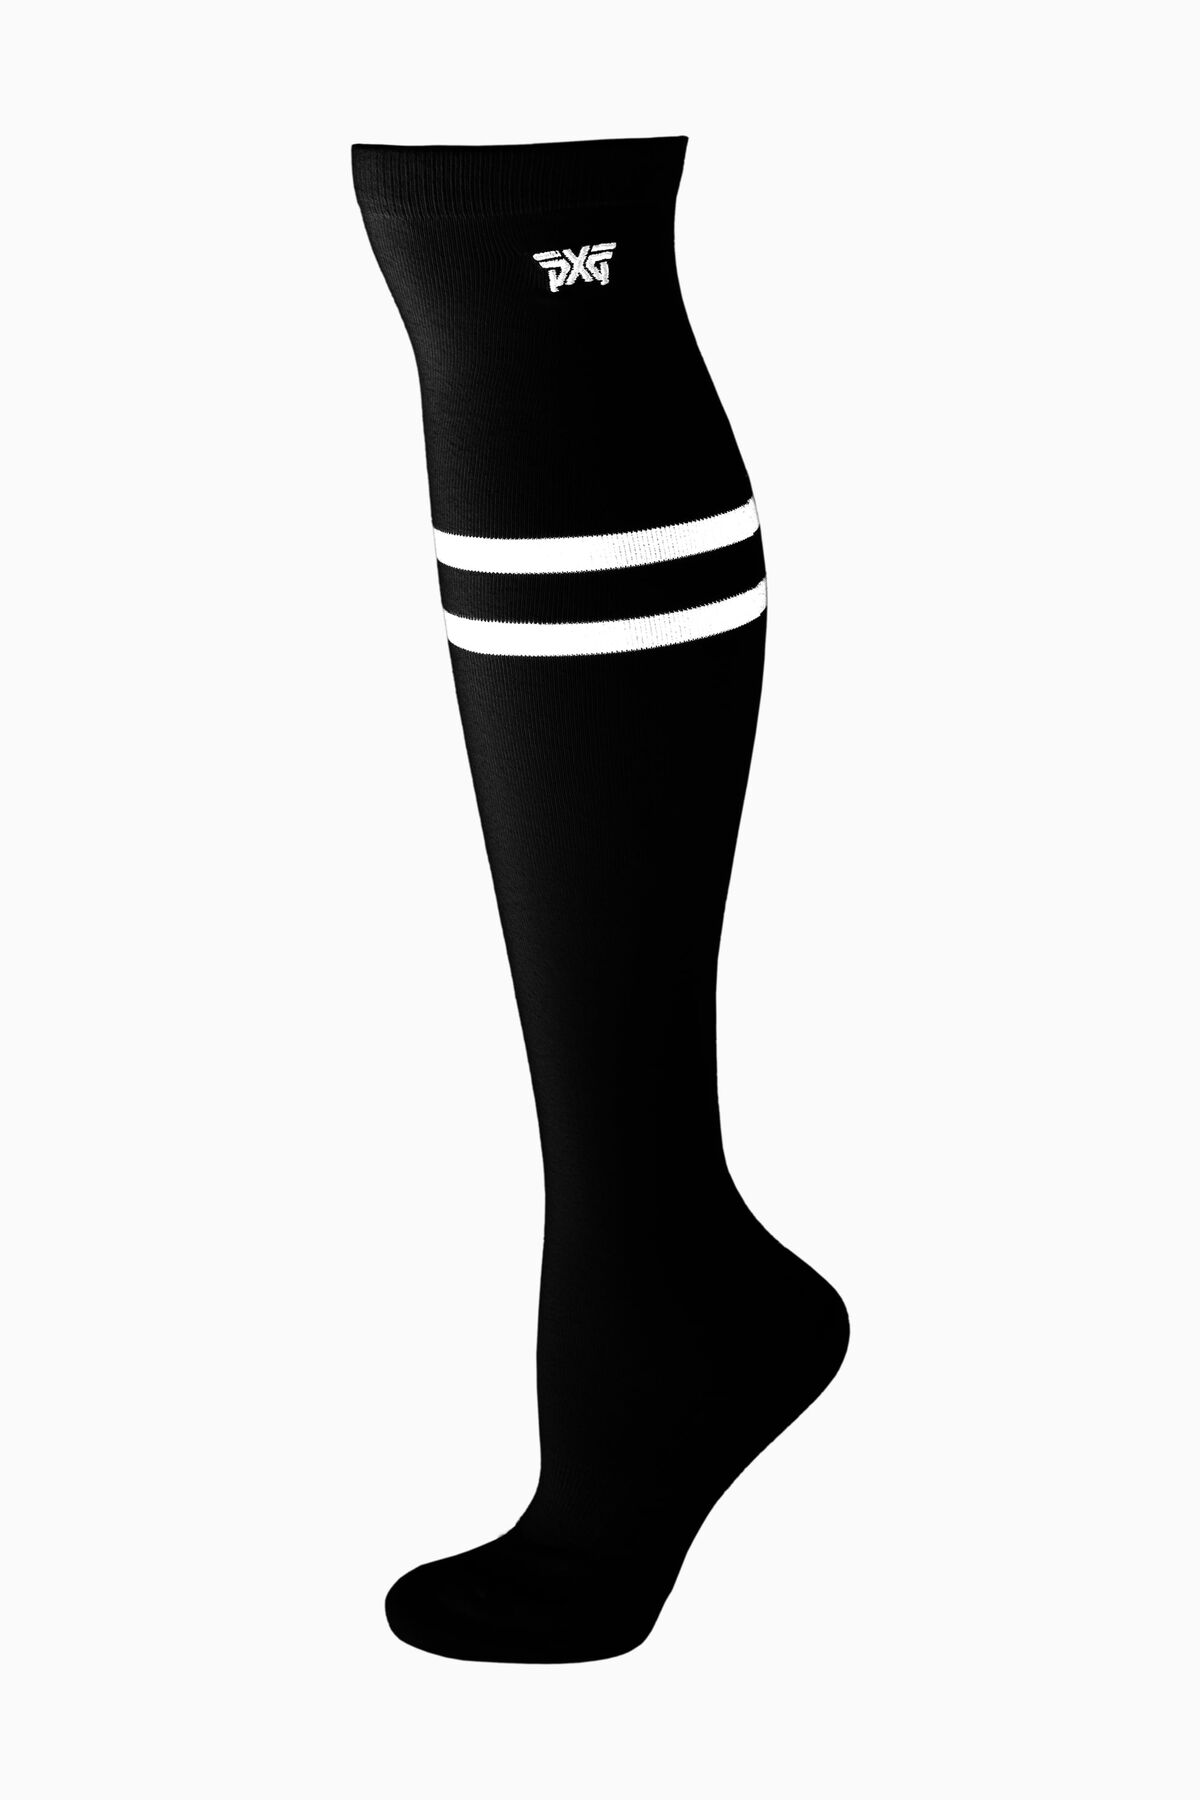 2021 Women's Knee High Socks- Black Black